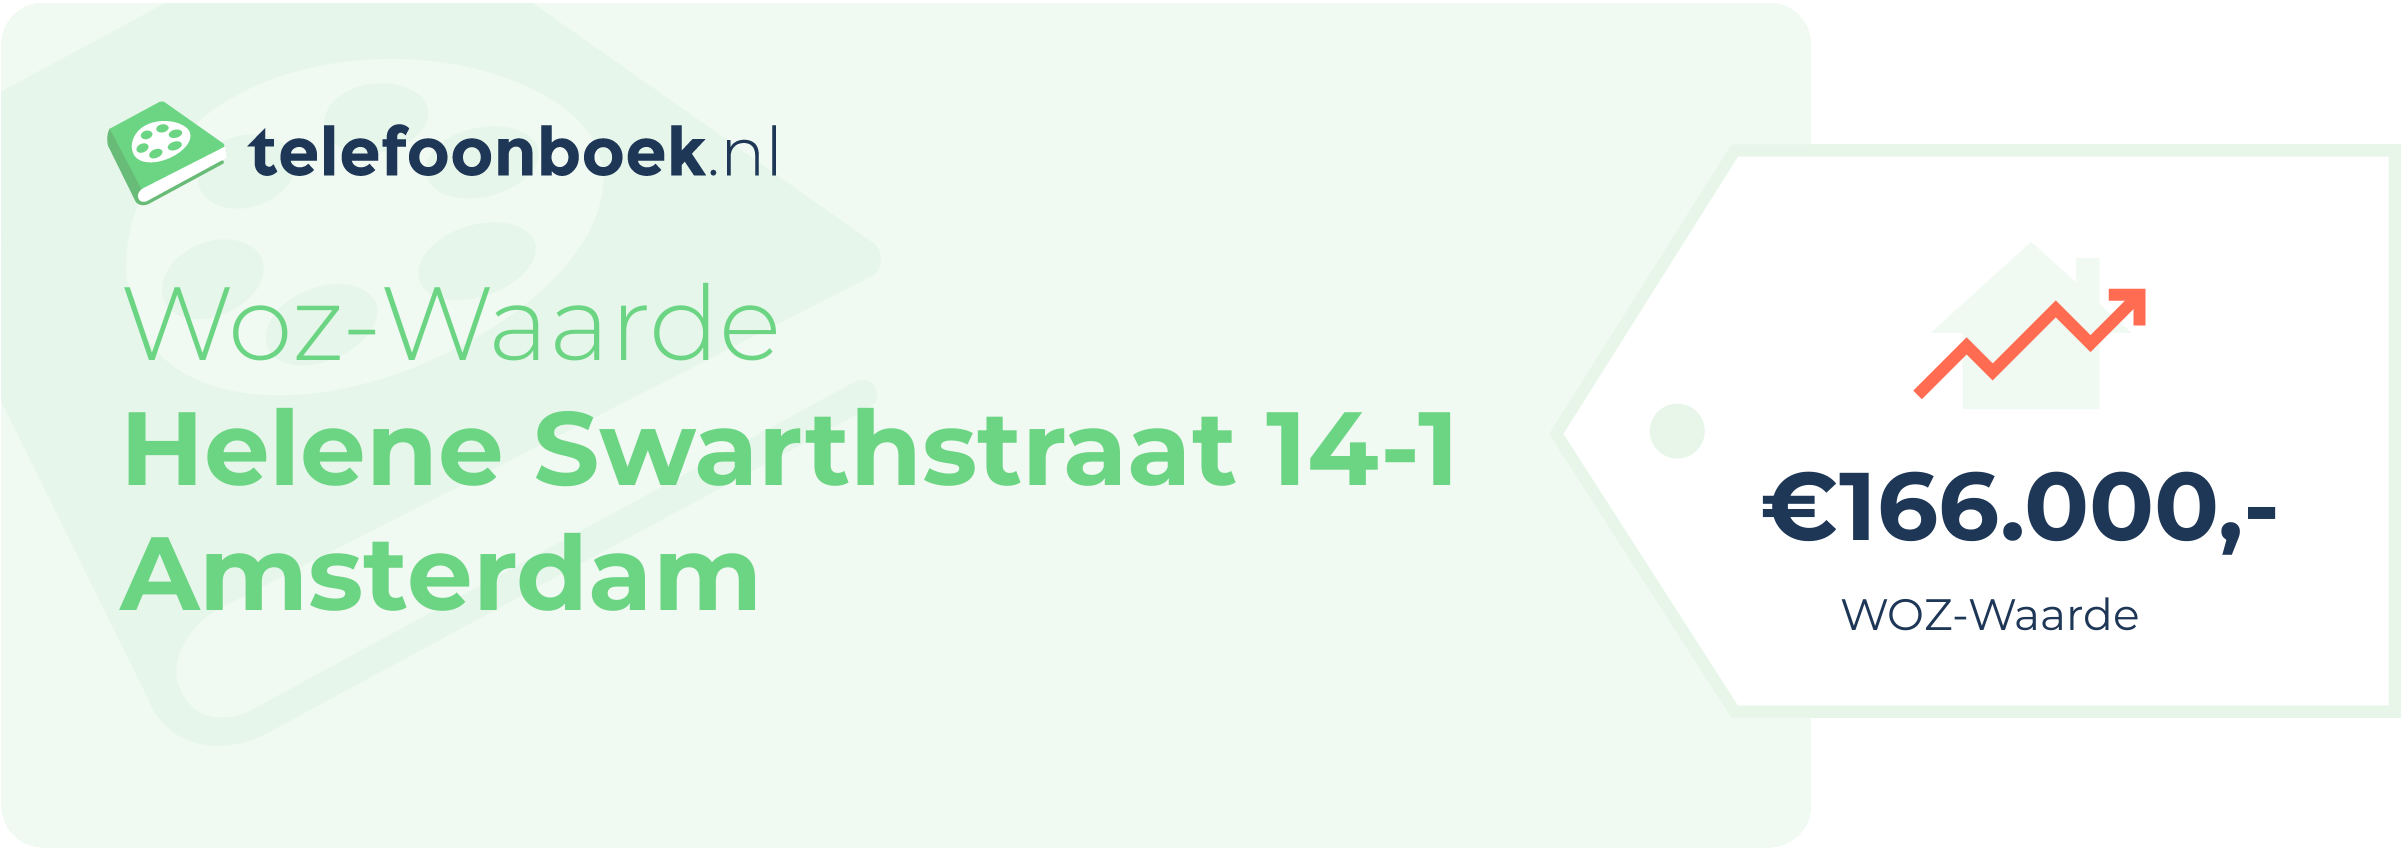 WOZ-waarde Helene Swarthstraat 14-1 Amsterdam